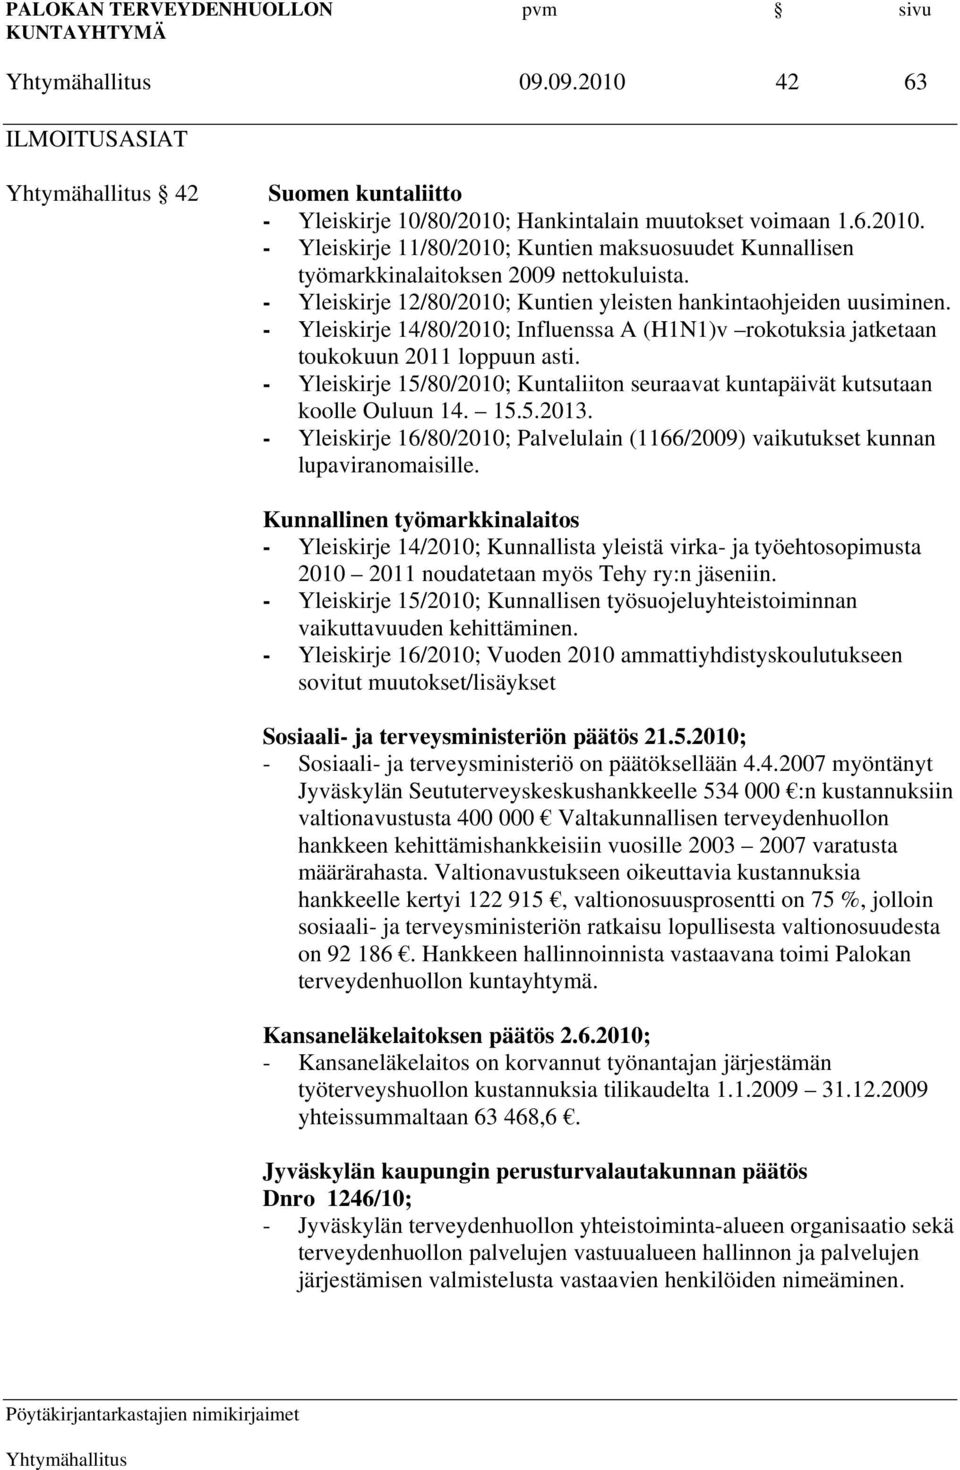 - Yleiskirje 15/80/2010; Kuntaliiton seuraavat kuntapäivät kutsutaan koolle Ouluun 14. 15.5.2013. - Yleiskirje 16/80/2010; Palvelulain (1166/2009) vaikutukset kunnan lupaviranomaisille.